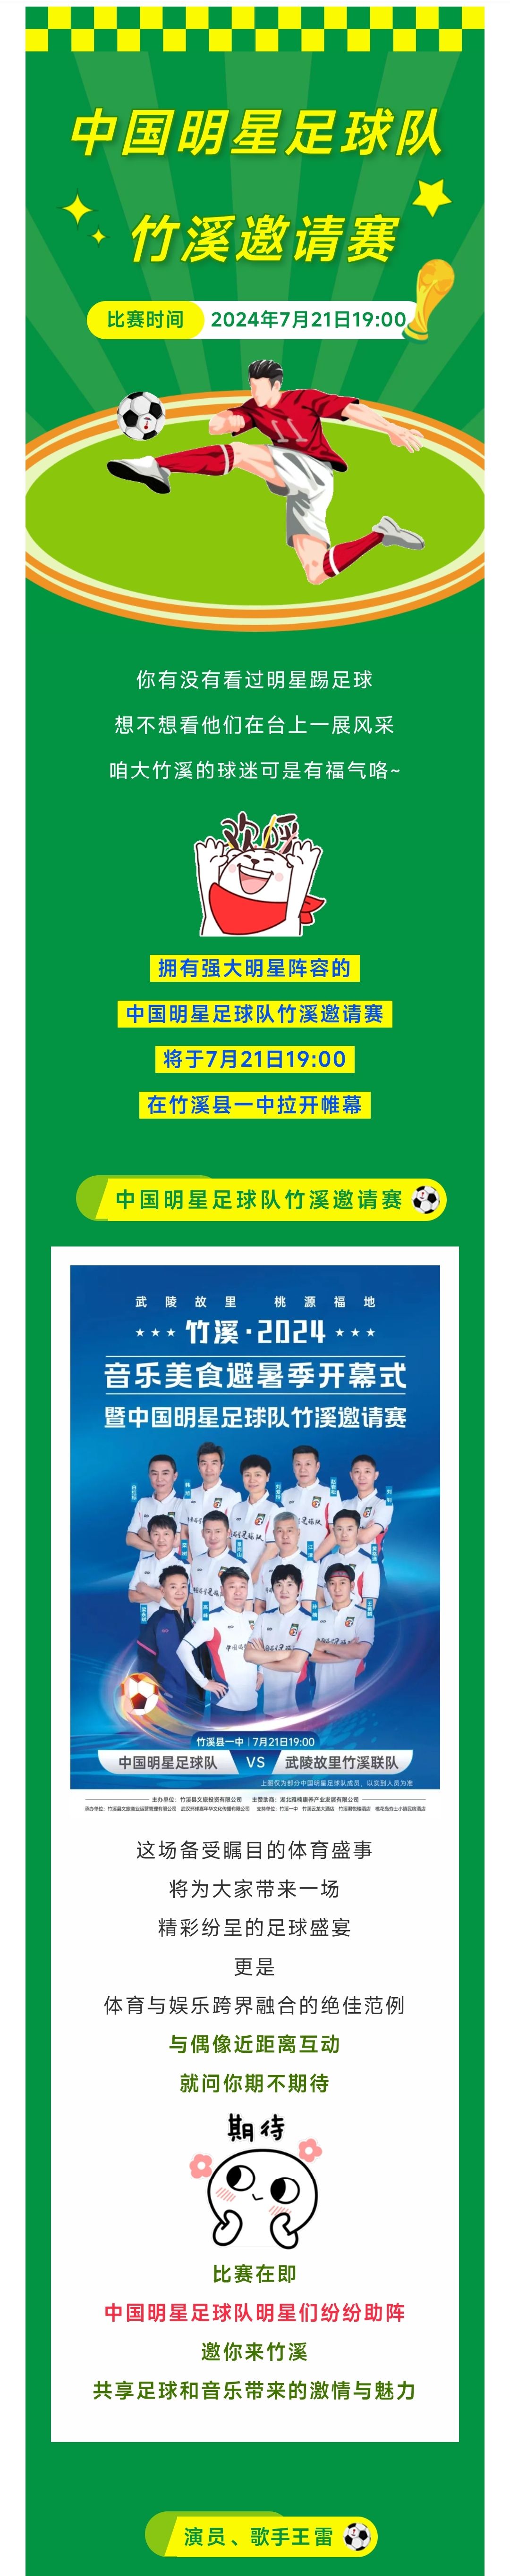 视帝王雷助阵中国明星足球队,邀您7月21日来竹溪共赏激情赛事!